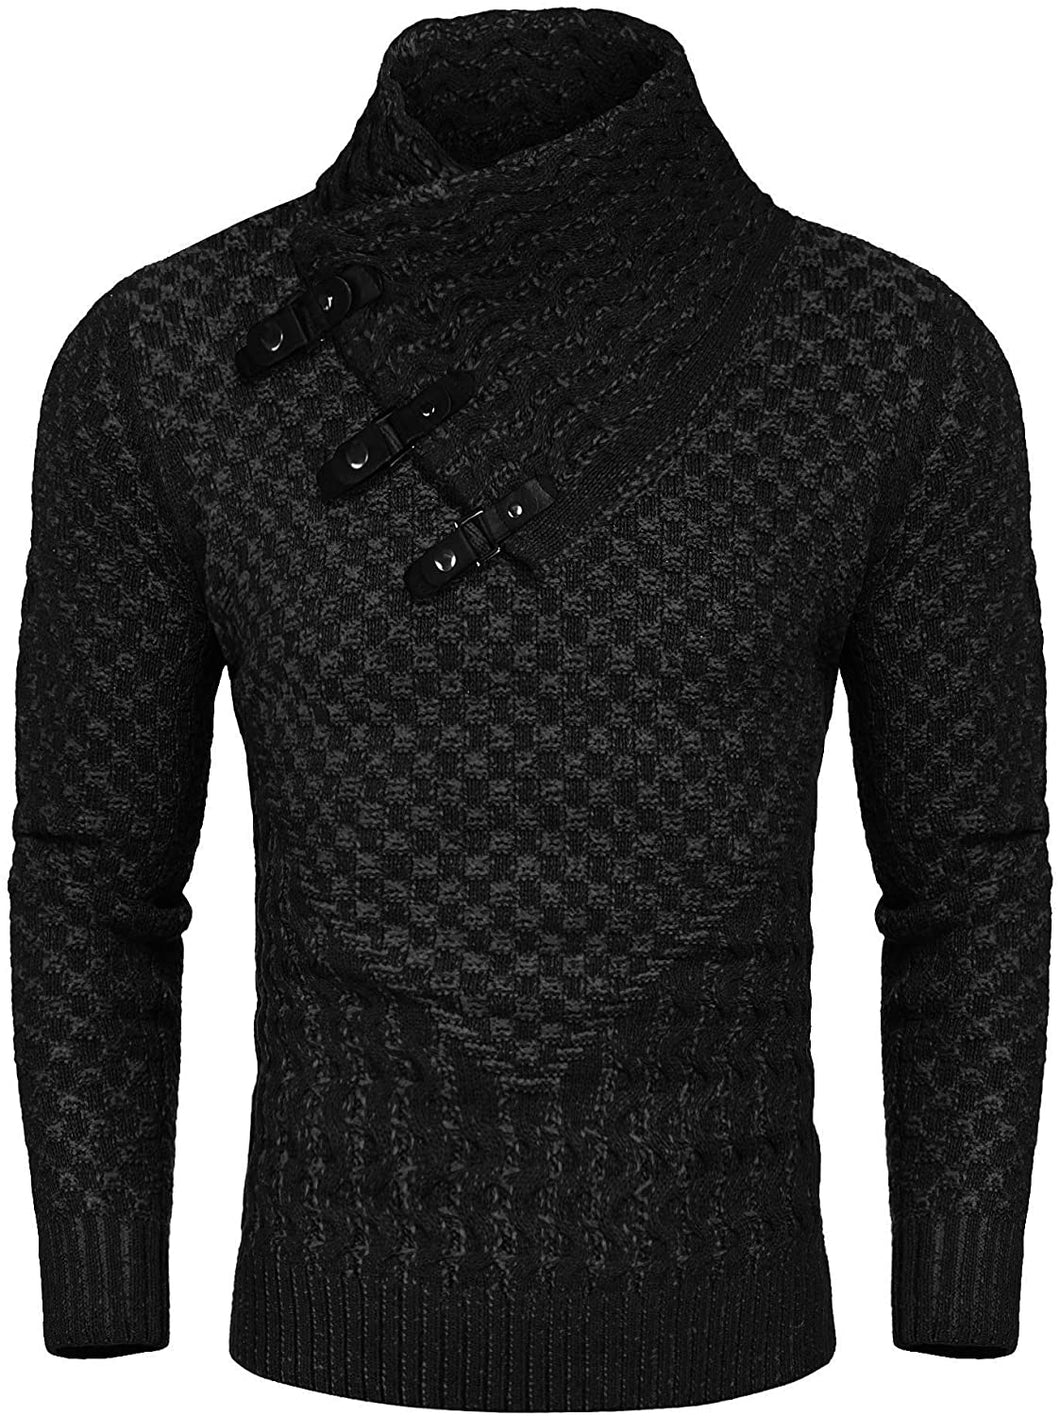 Men's Black Long Sleeve Slim Fit Designer Knitted Turtleneck Sweater